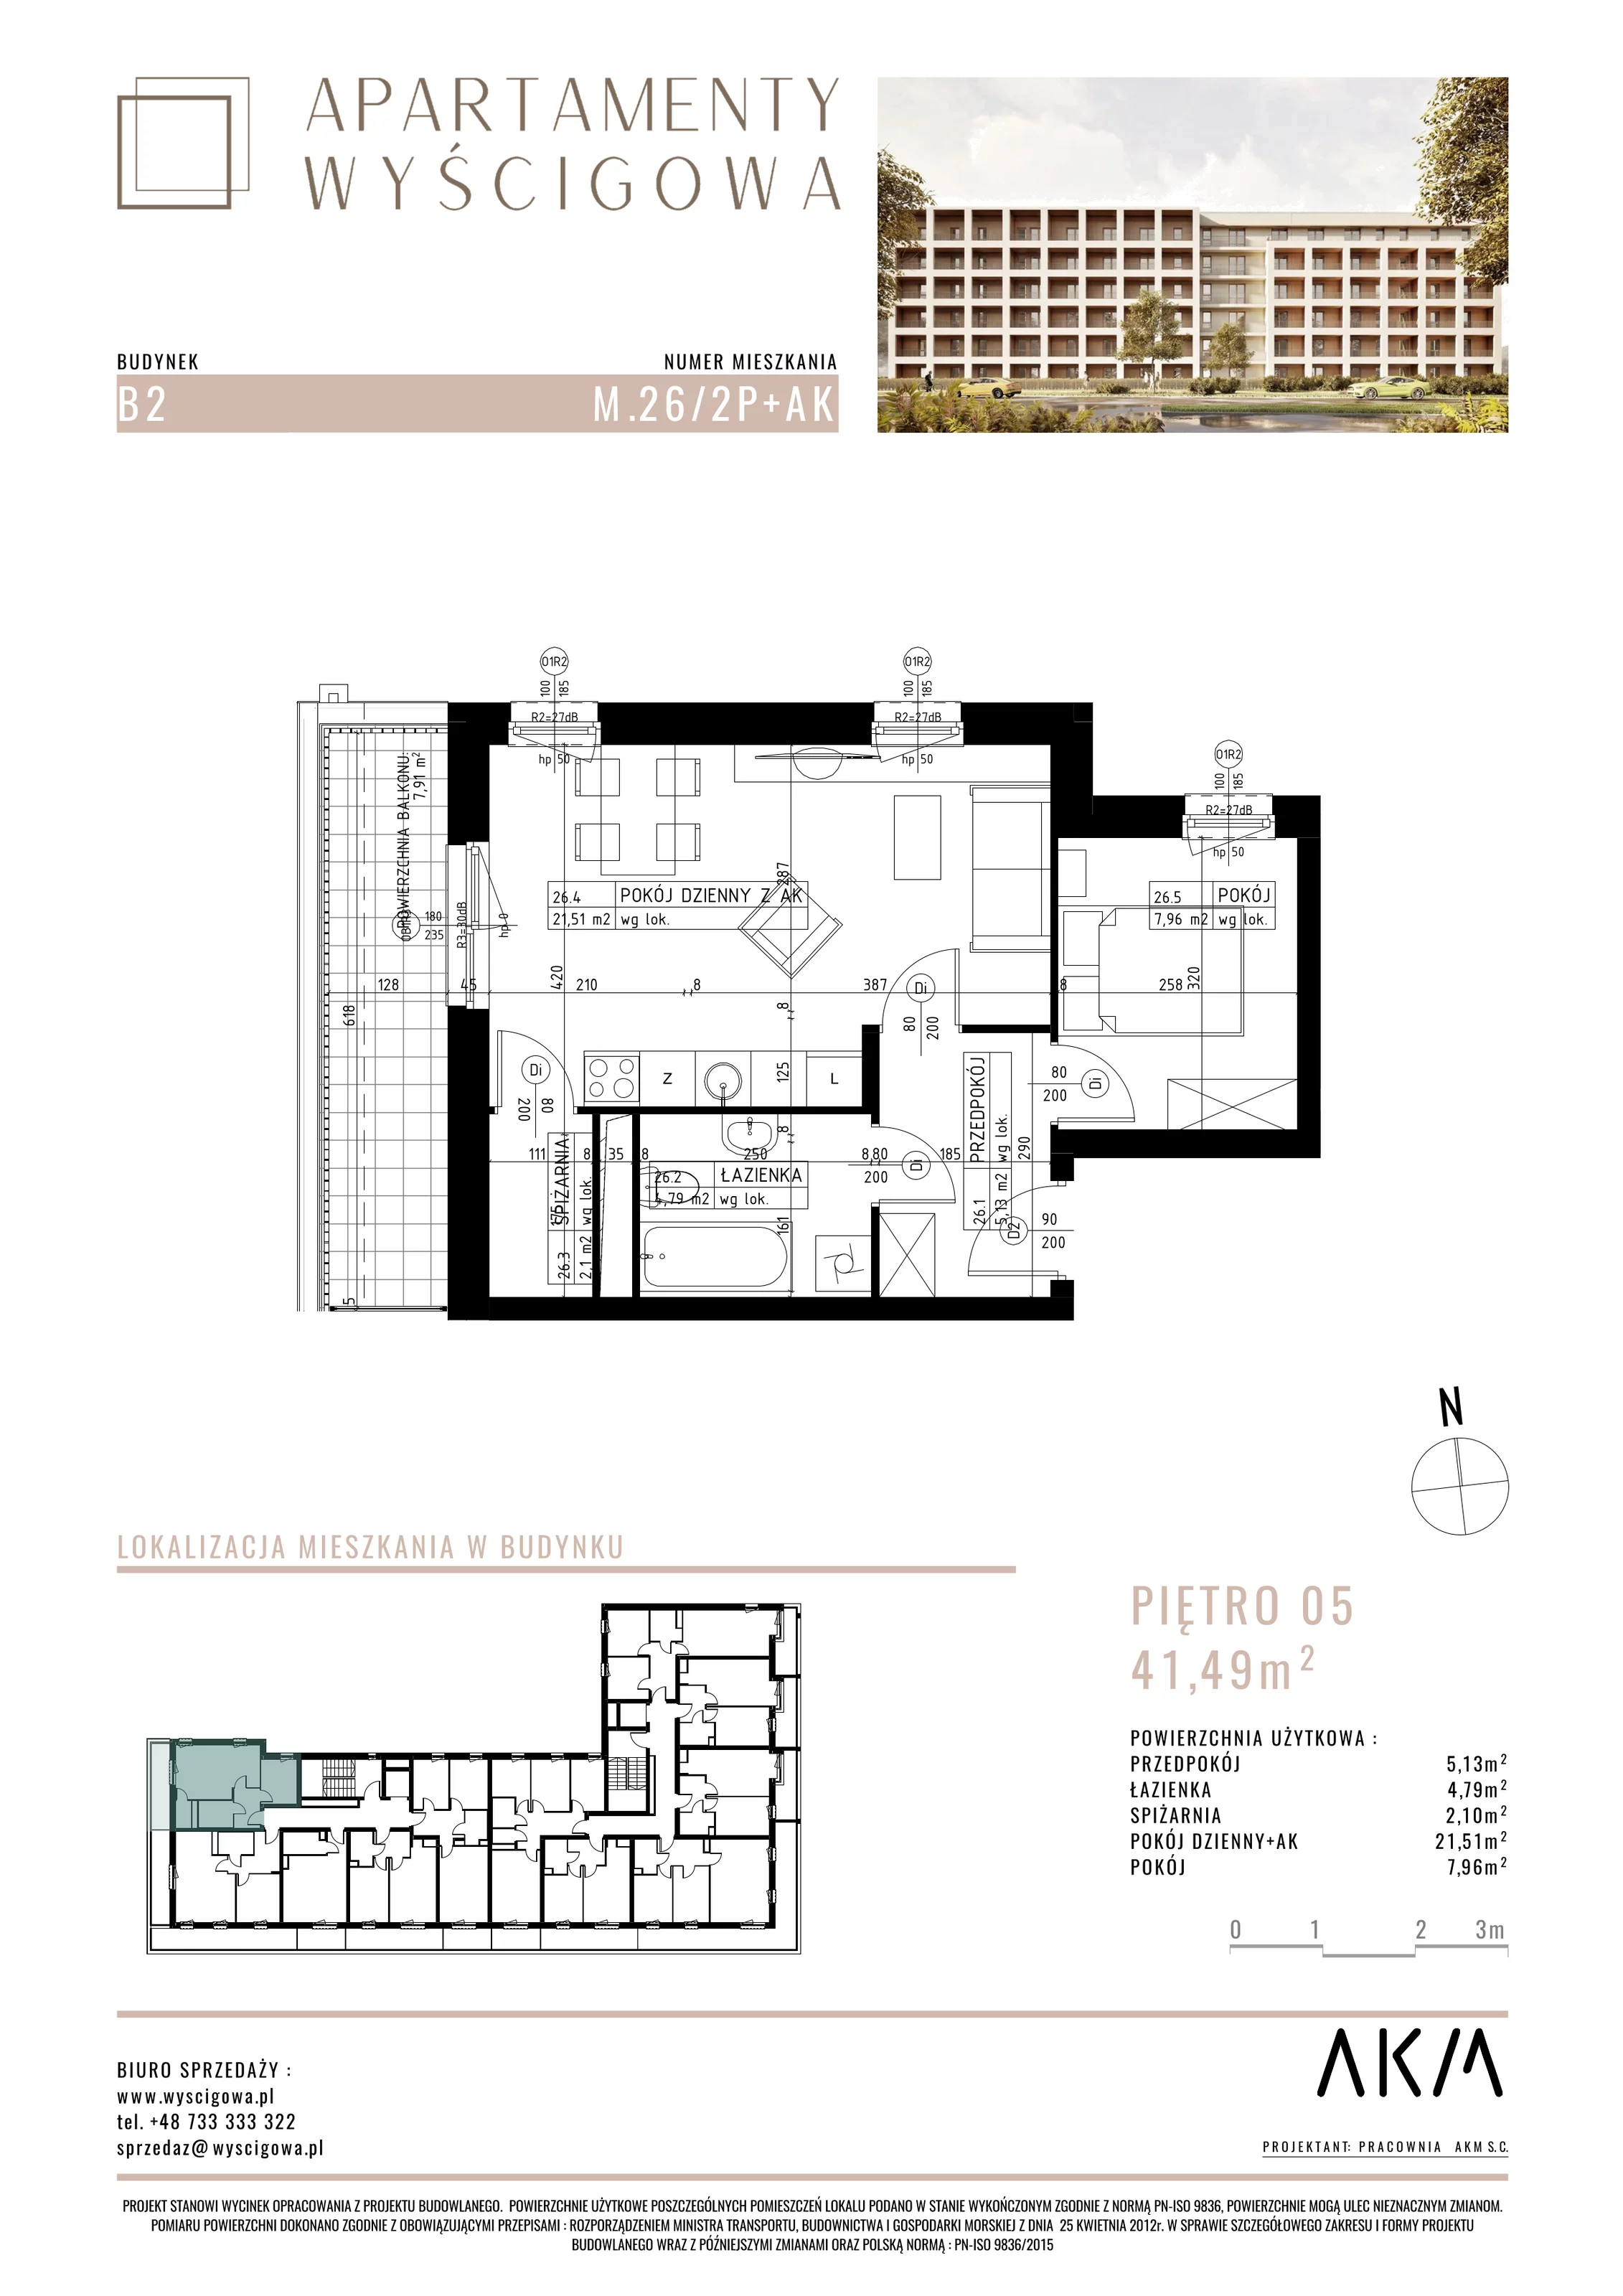 Mieszkanie 41,49 m², piętro 5, oferta nr B2.M26, Apartamenty Wyścigowa, Lublin, Dziesiąta, Dziesiąta, ul. Wyścigowa